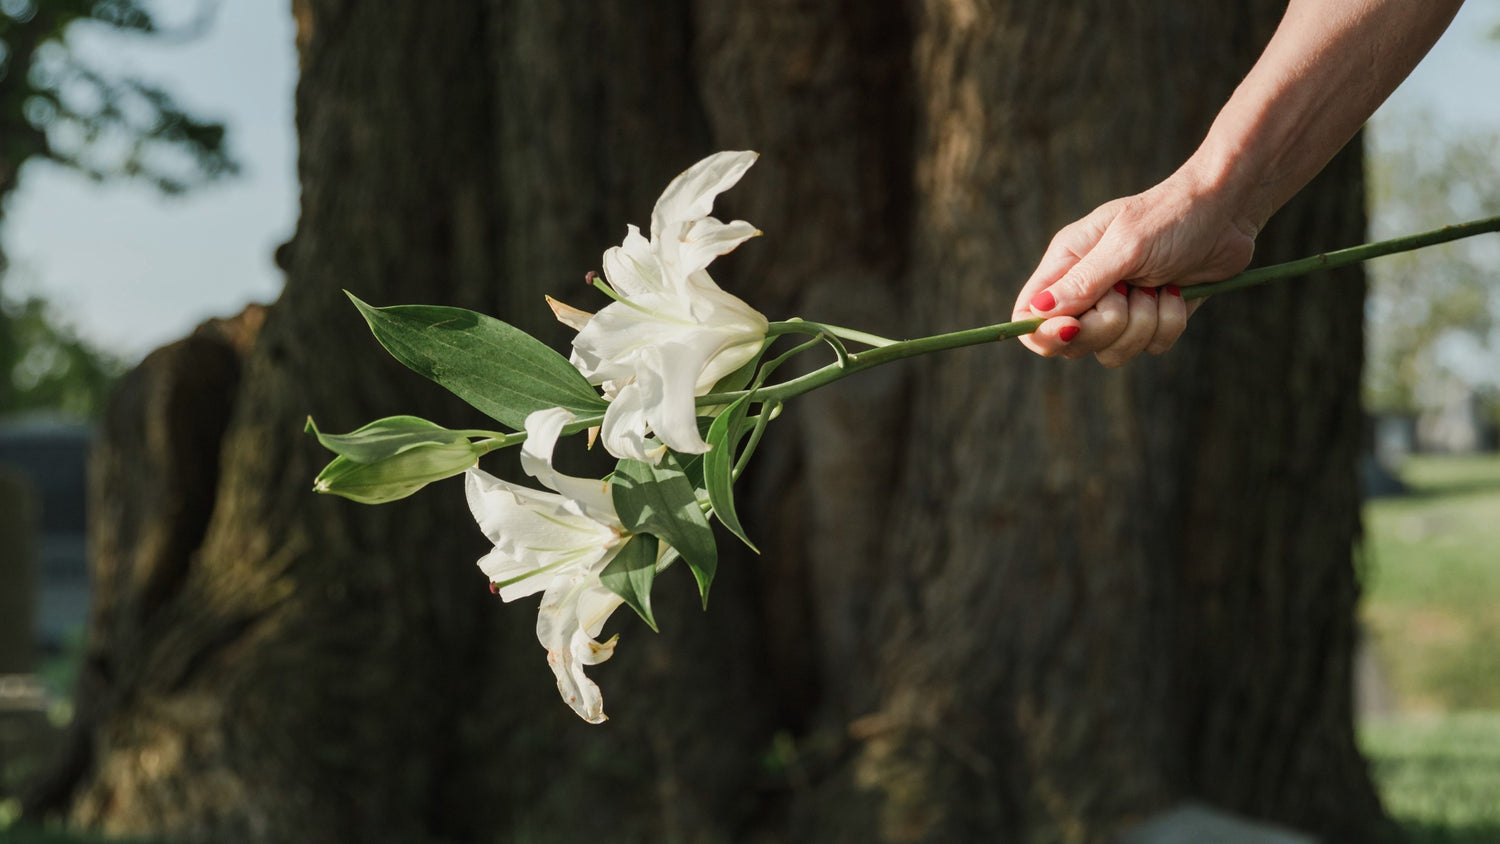 Ungkap Misteri Bunga yang Melambangkan Cinta Dalam Diam